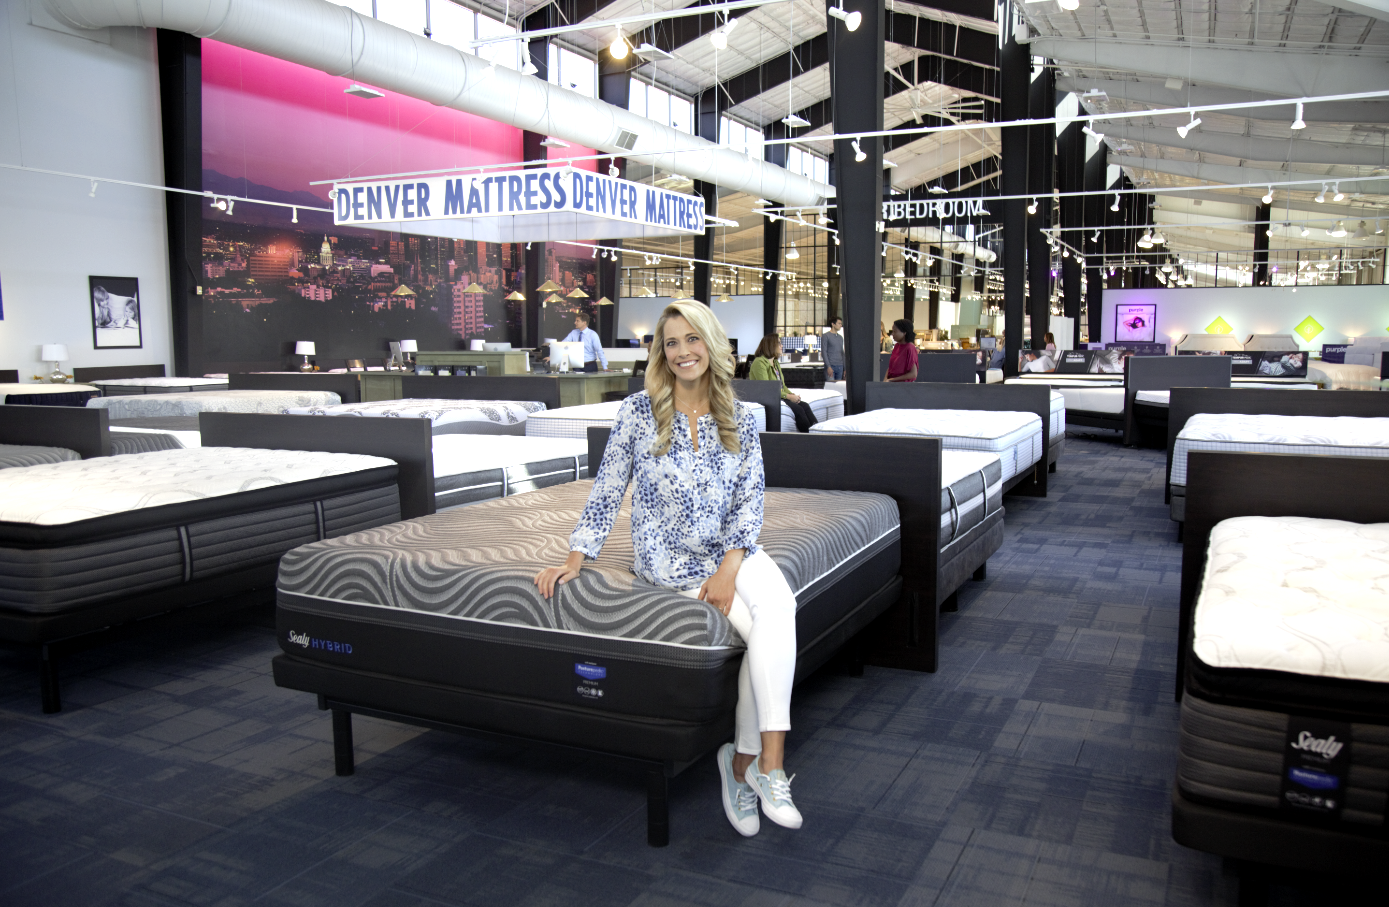 Denver Mattress - Factory Direct and Brand Name Mattresses. Huge mattress savings!